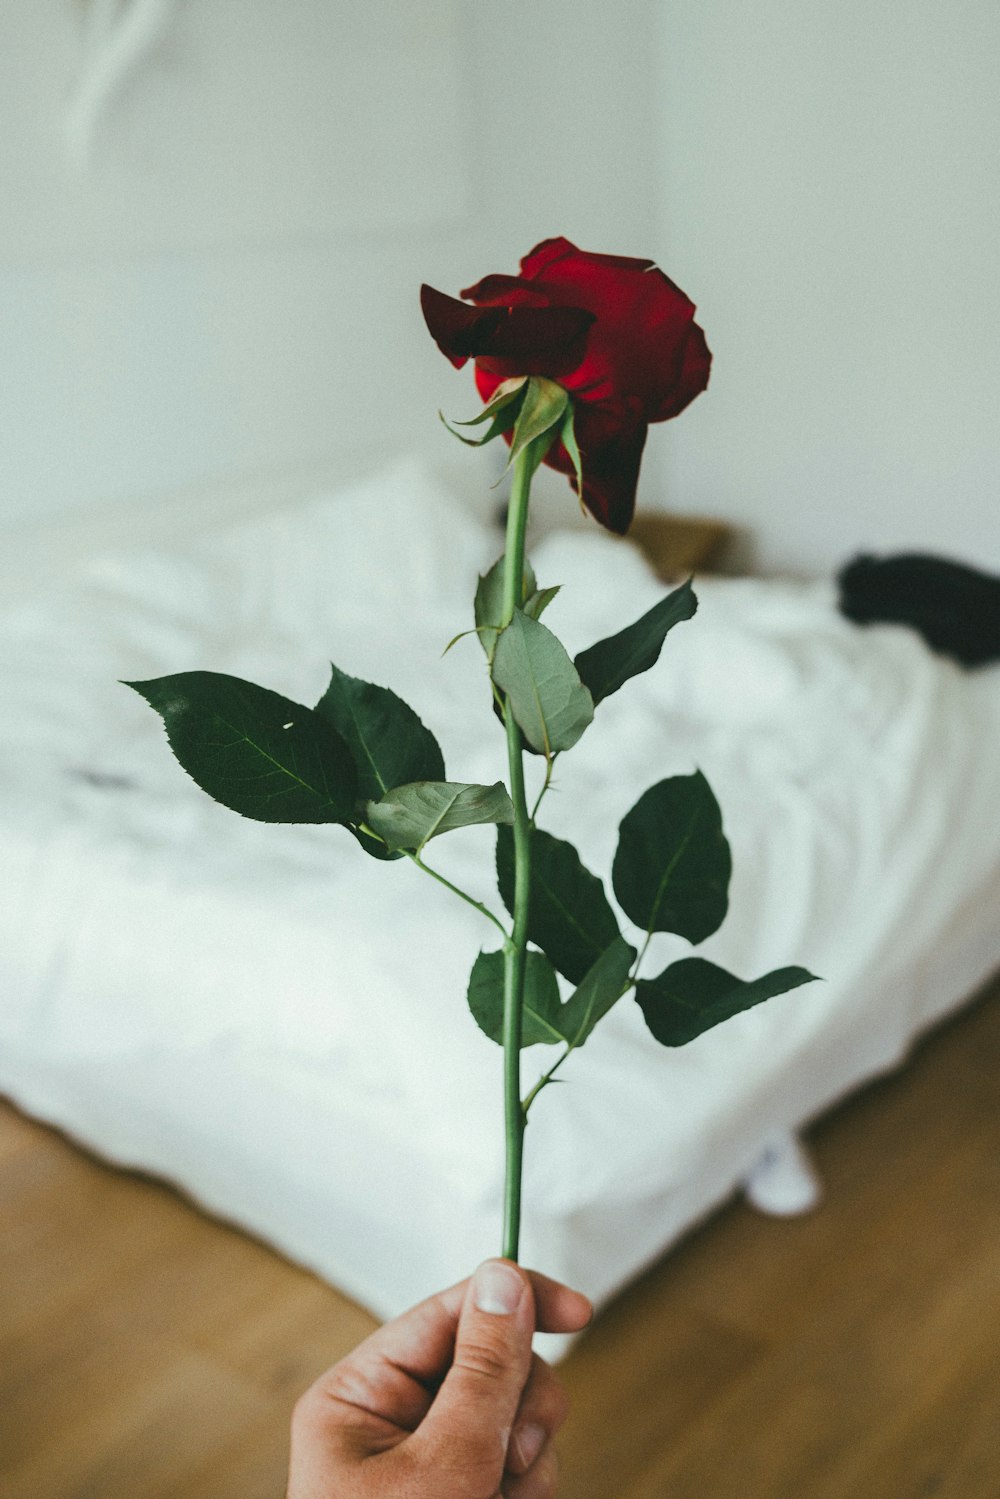 persona che tiene il fiore della rosa rossa